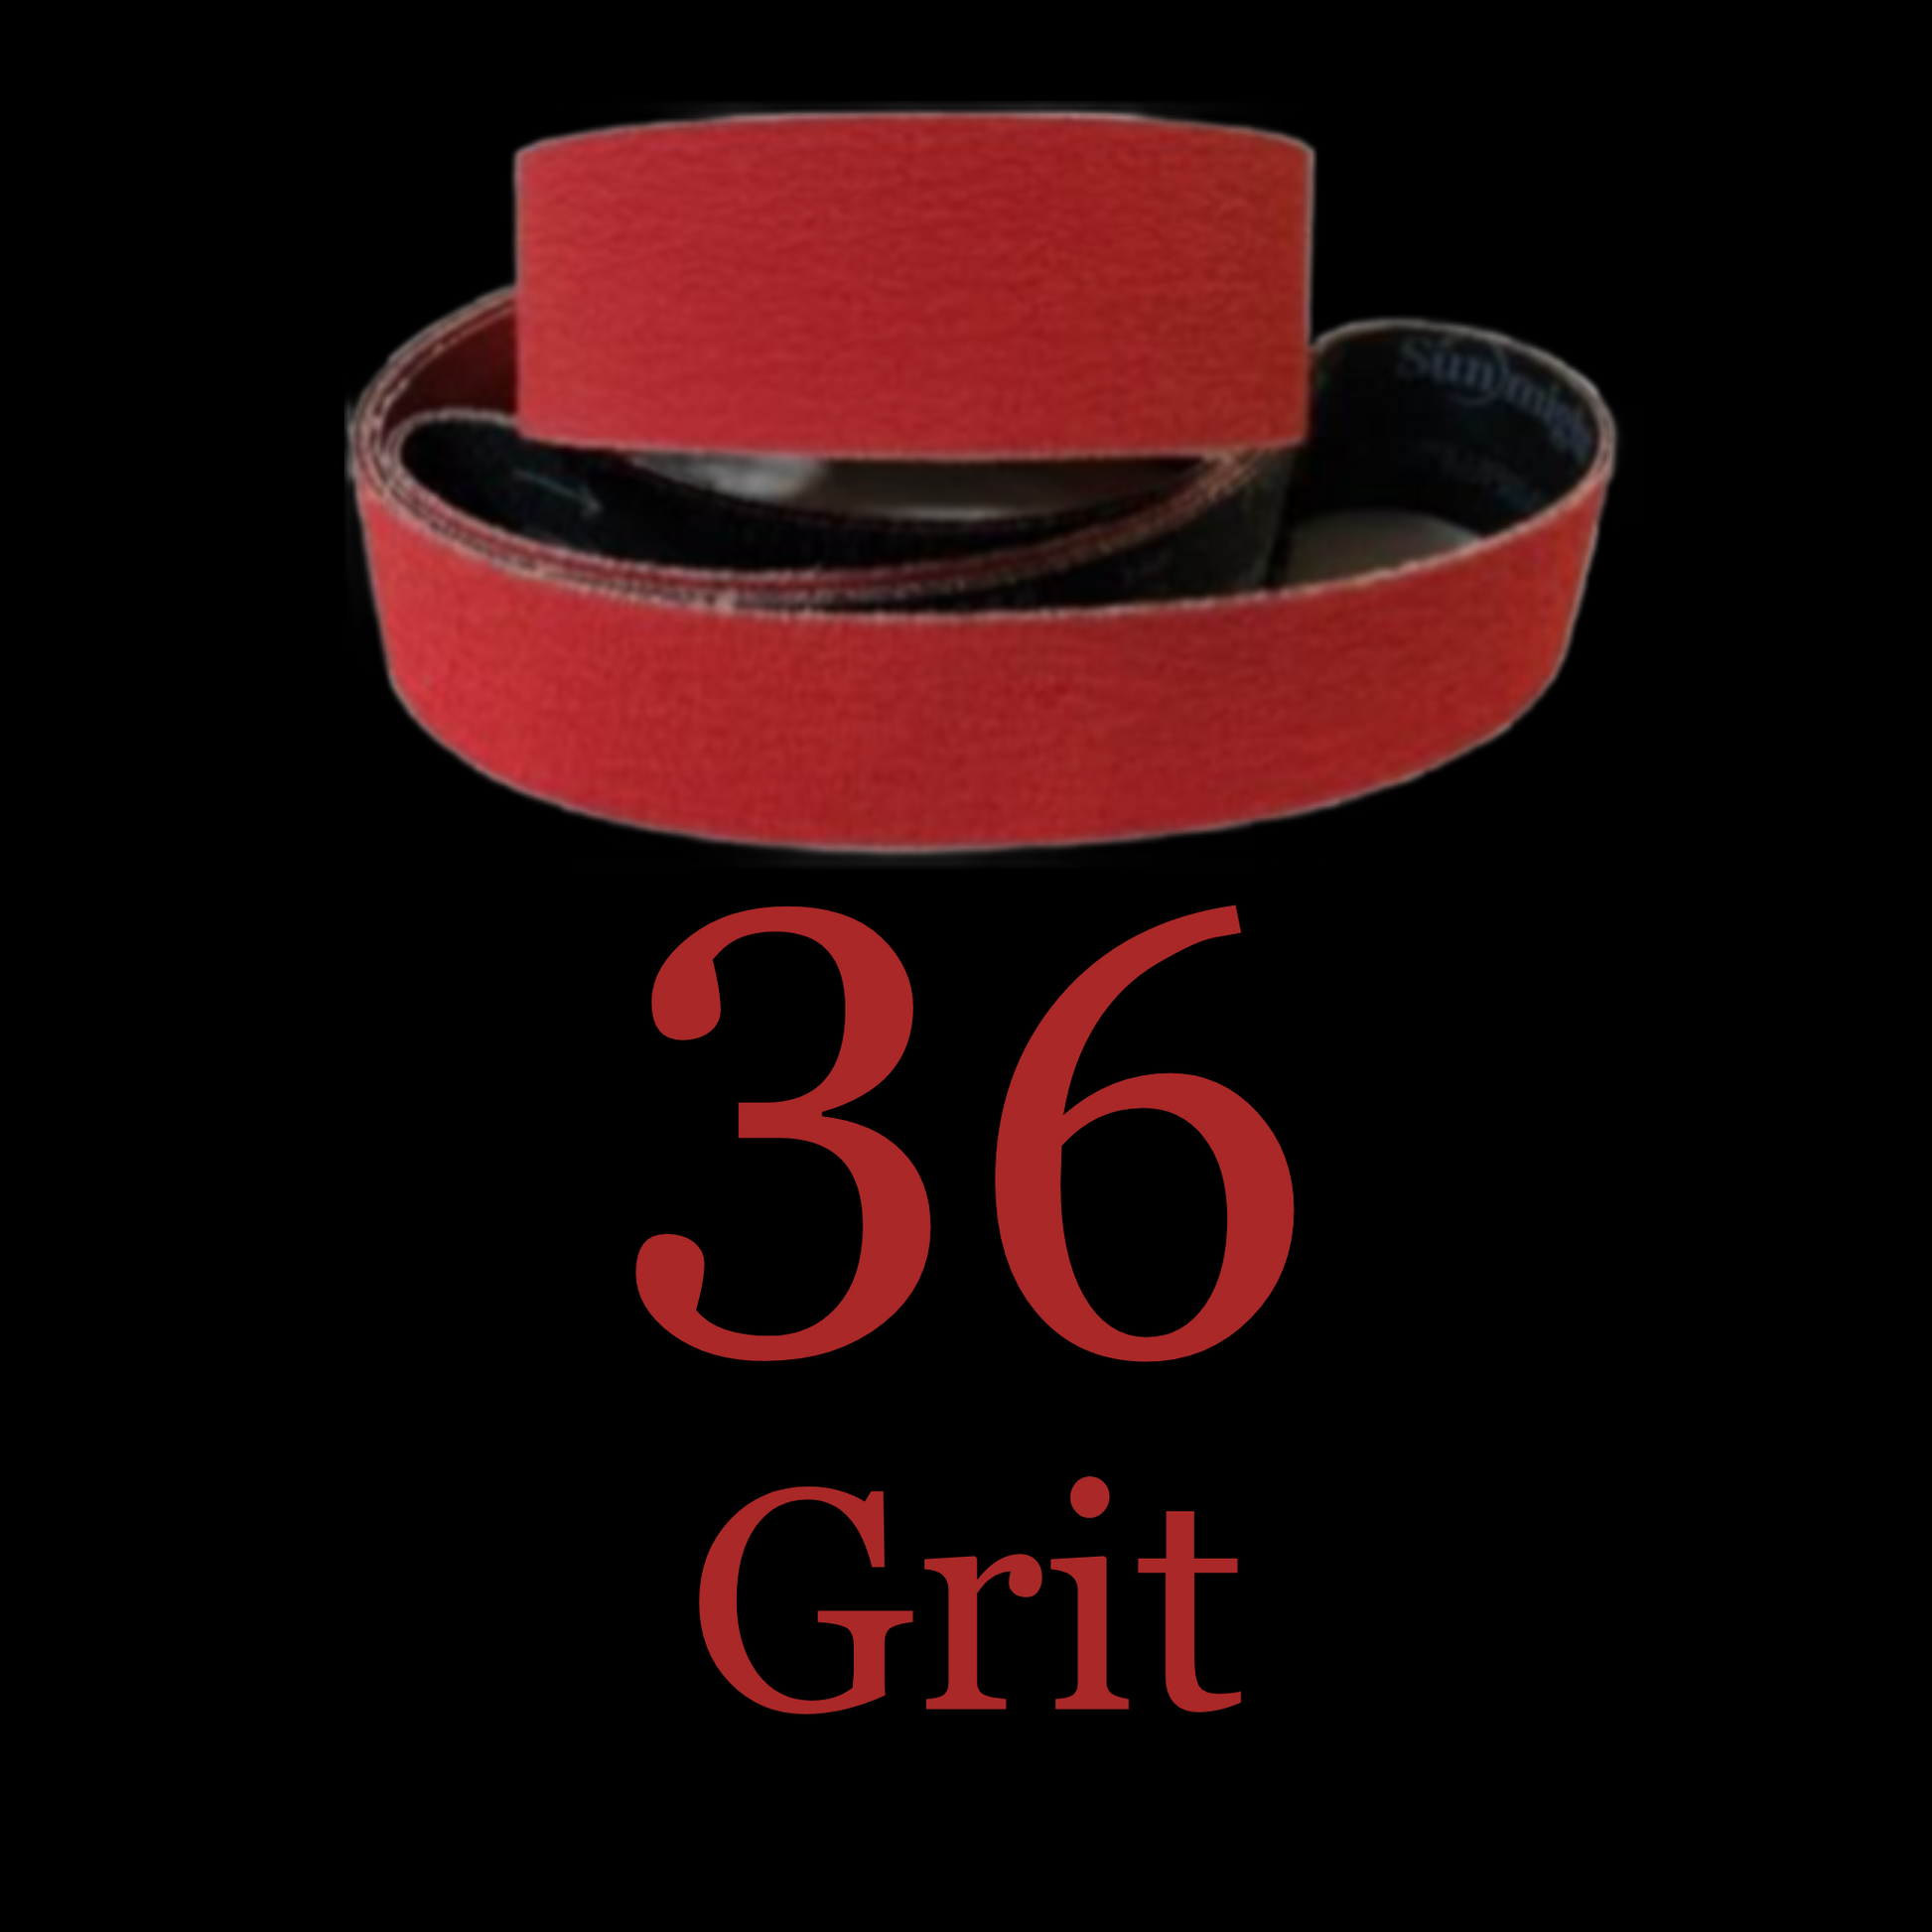 2” x 72” Premium Red Metal Eater Ceramic Belt 36 Grit